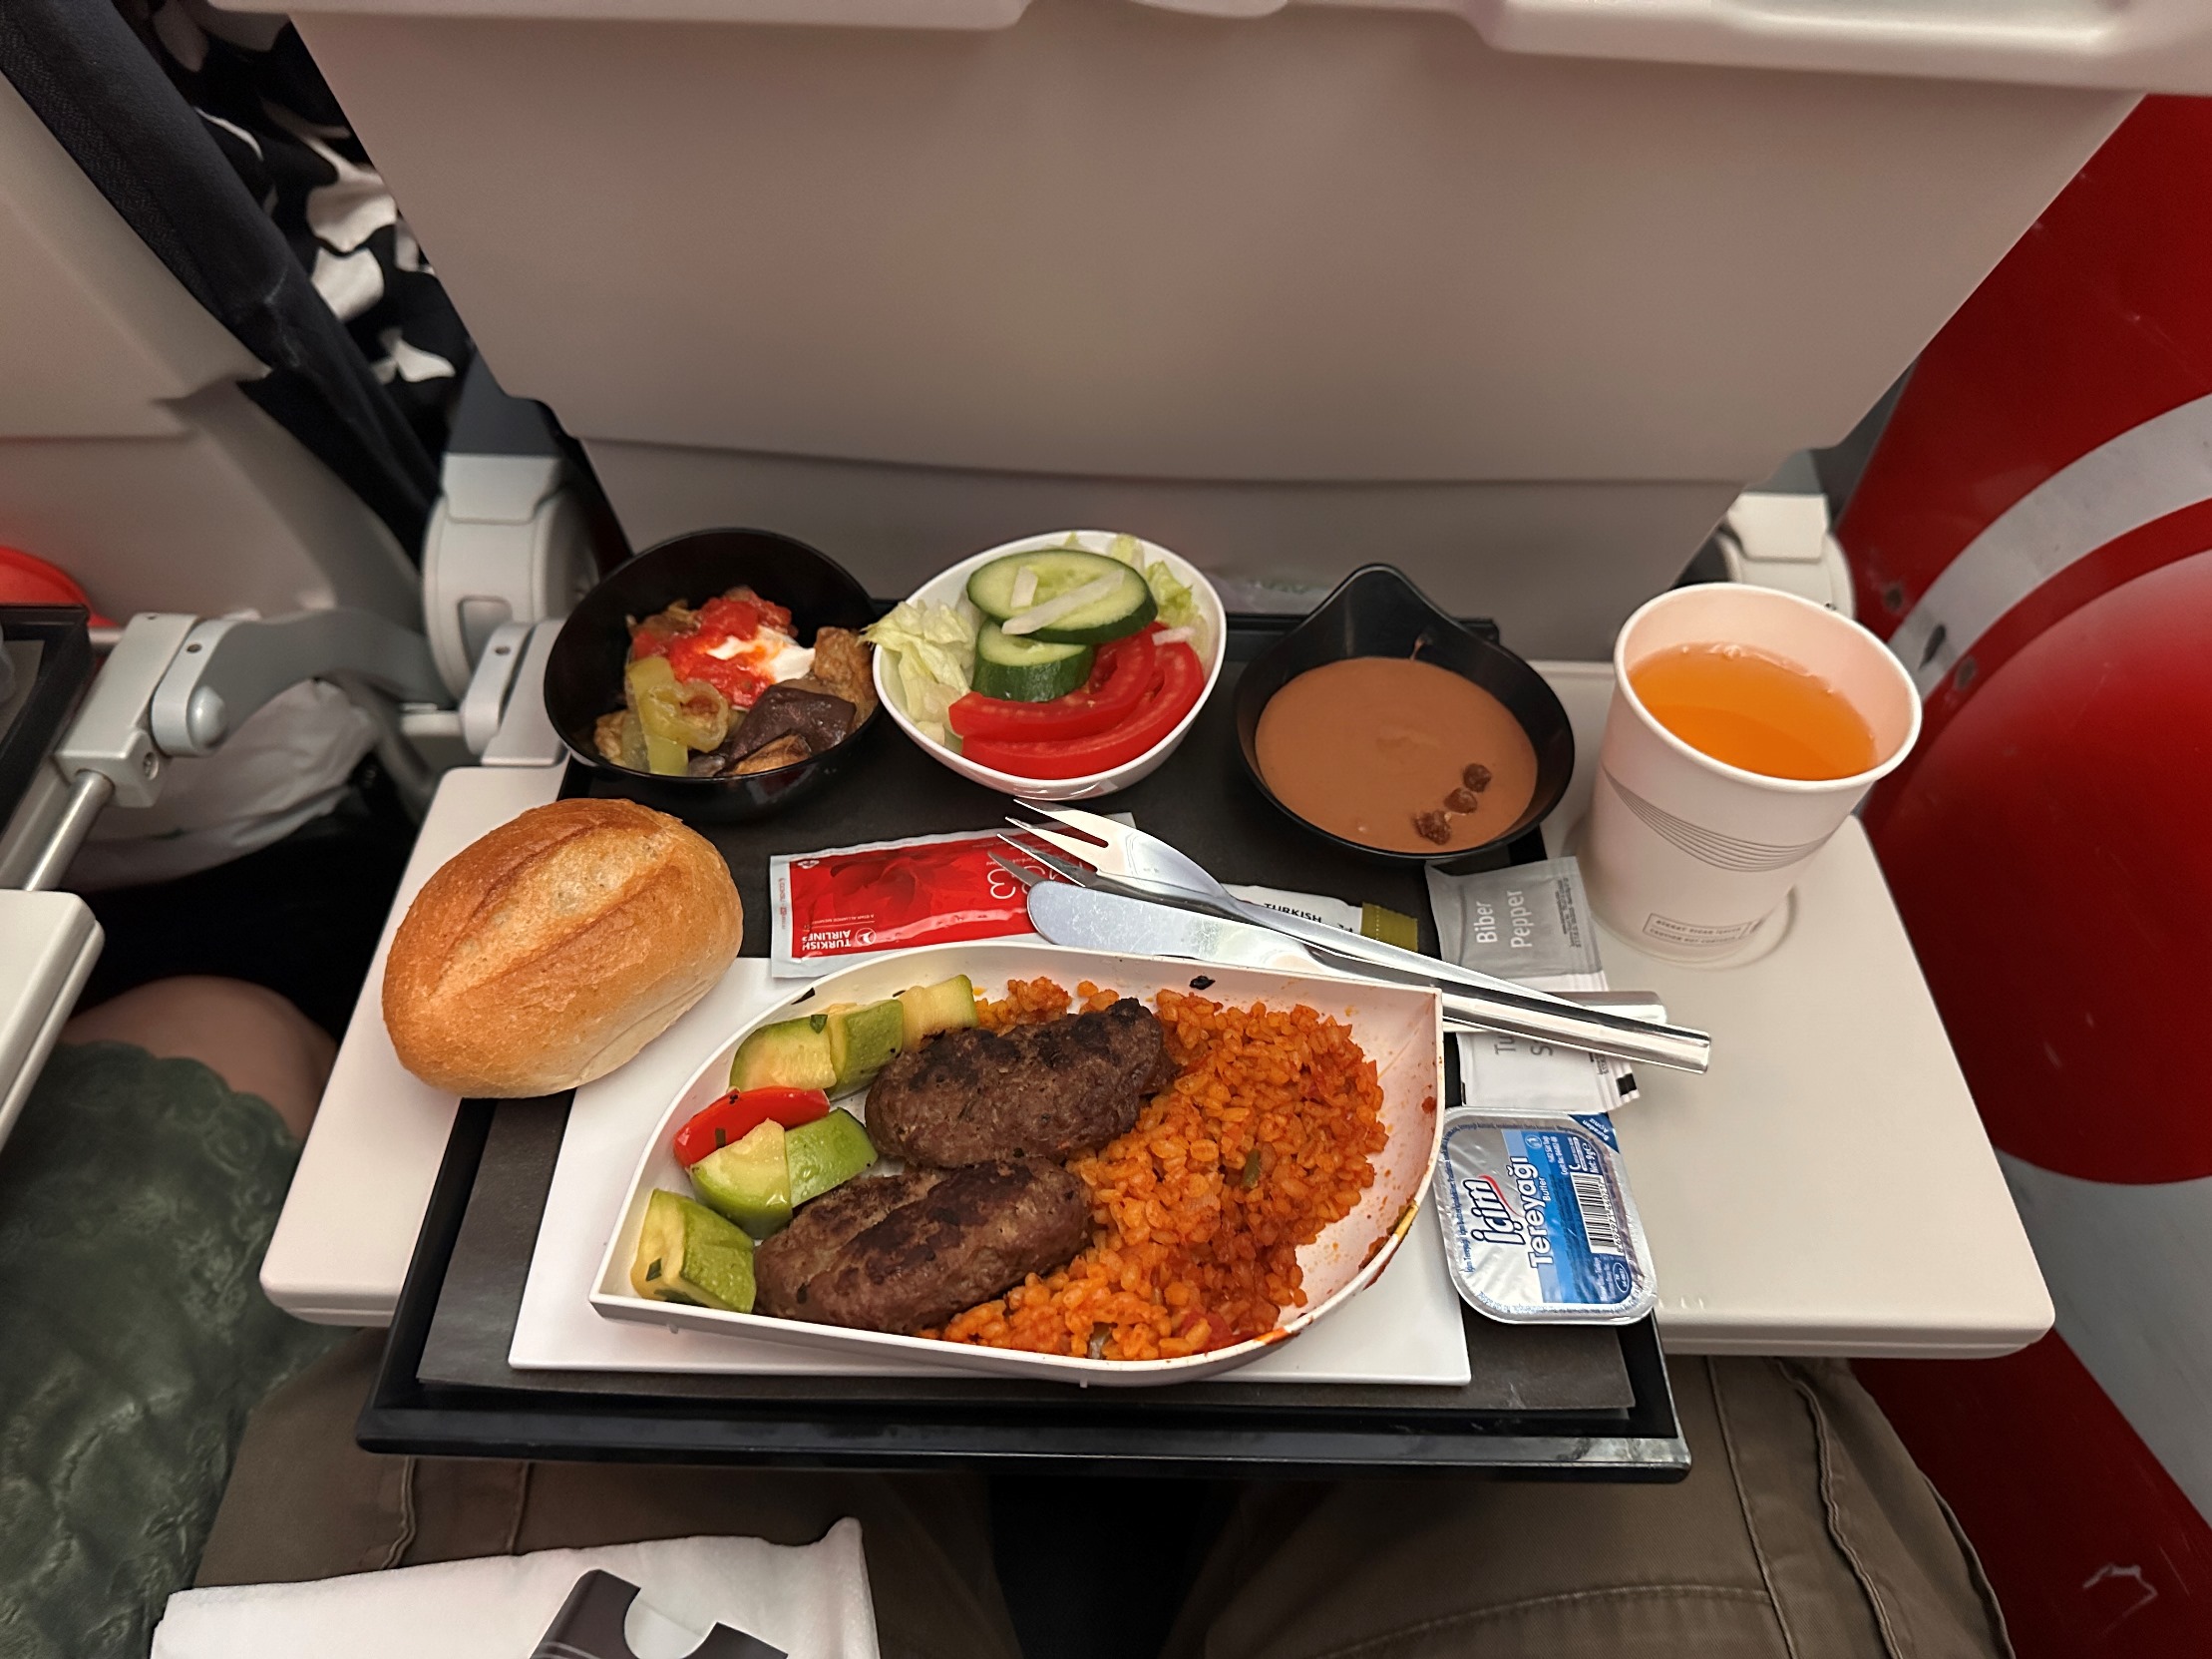 Türk Hava Yolları Economy Class Yemek İkramı (İstanbul – Tokyo)